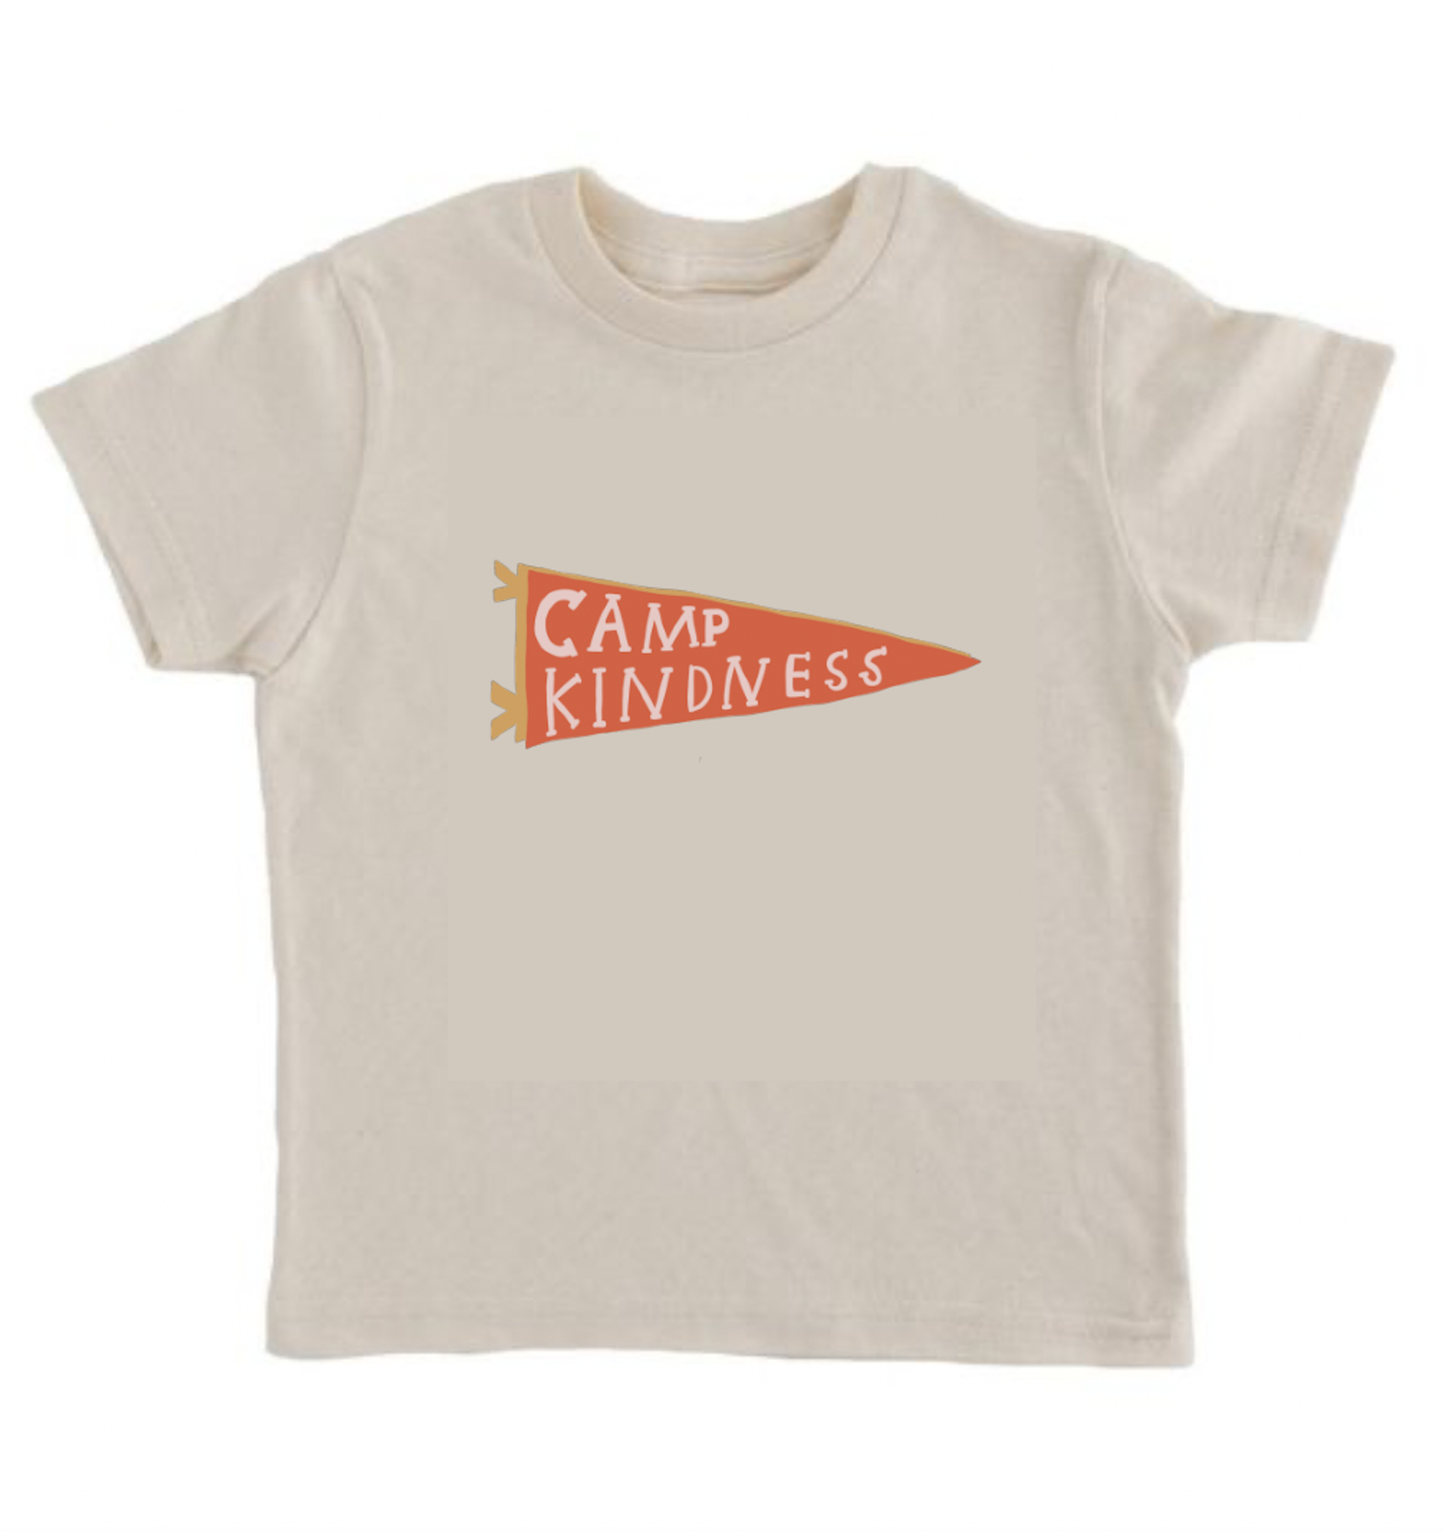 Camp Kindness